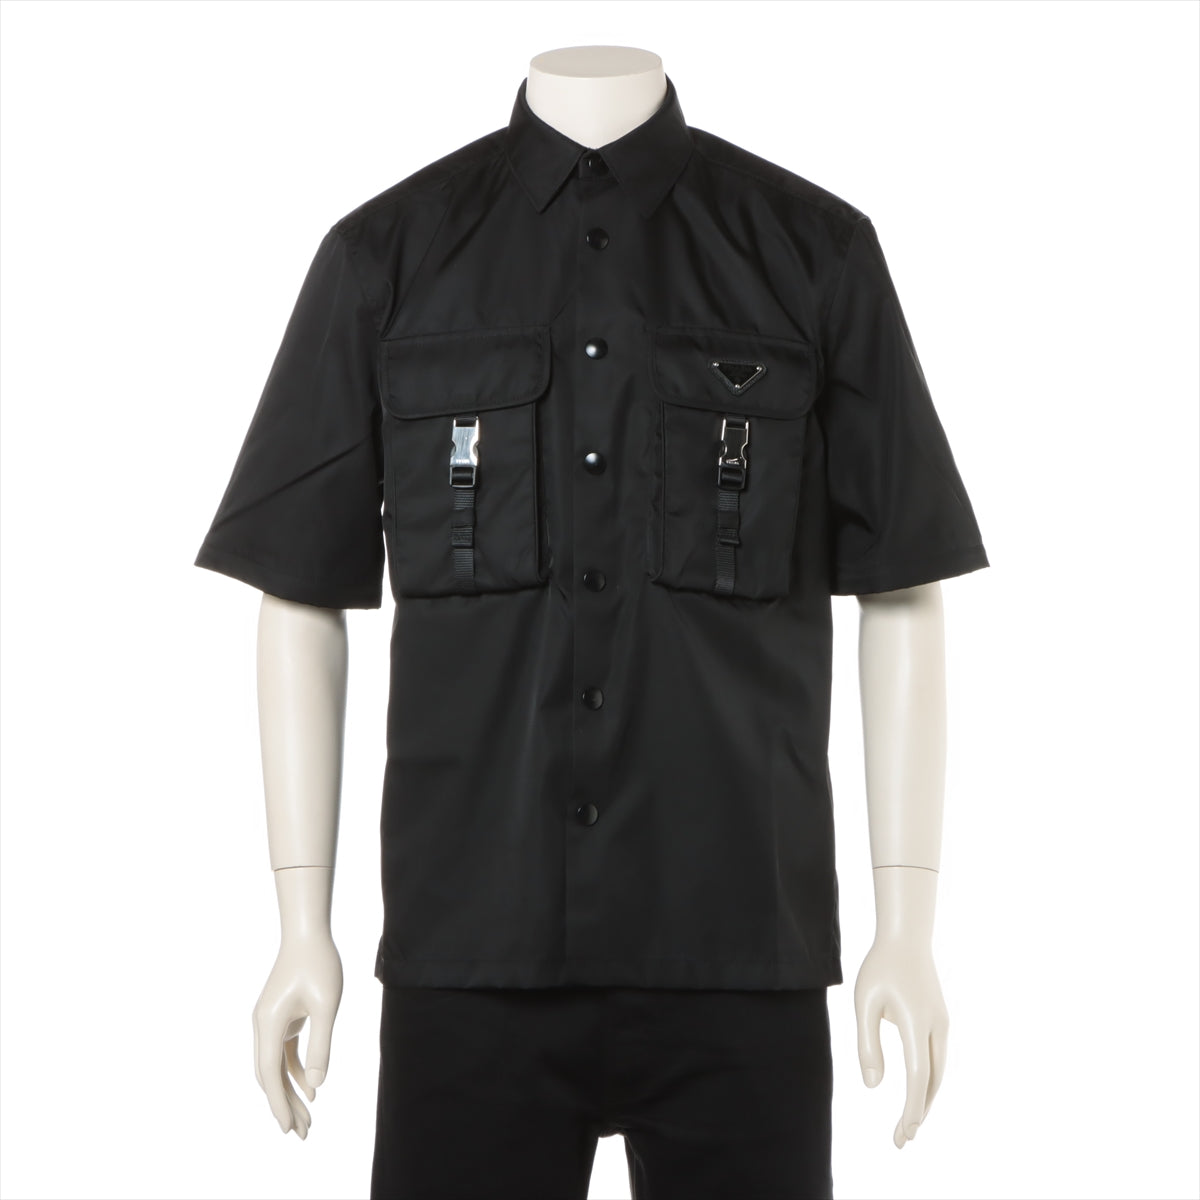 プラダ トライアングルロゴ 23年 ナイロン シャツ XS メンズ ブラック  Re-Nylon ダブルポケットシャツ スナップボタン 2WAY取り外し袖付 SC548